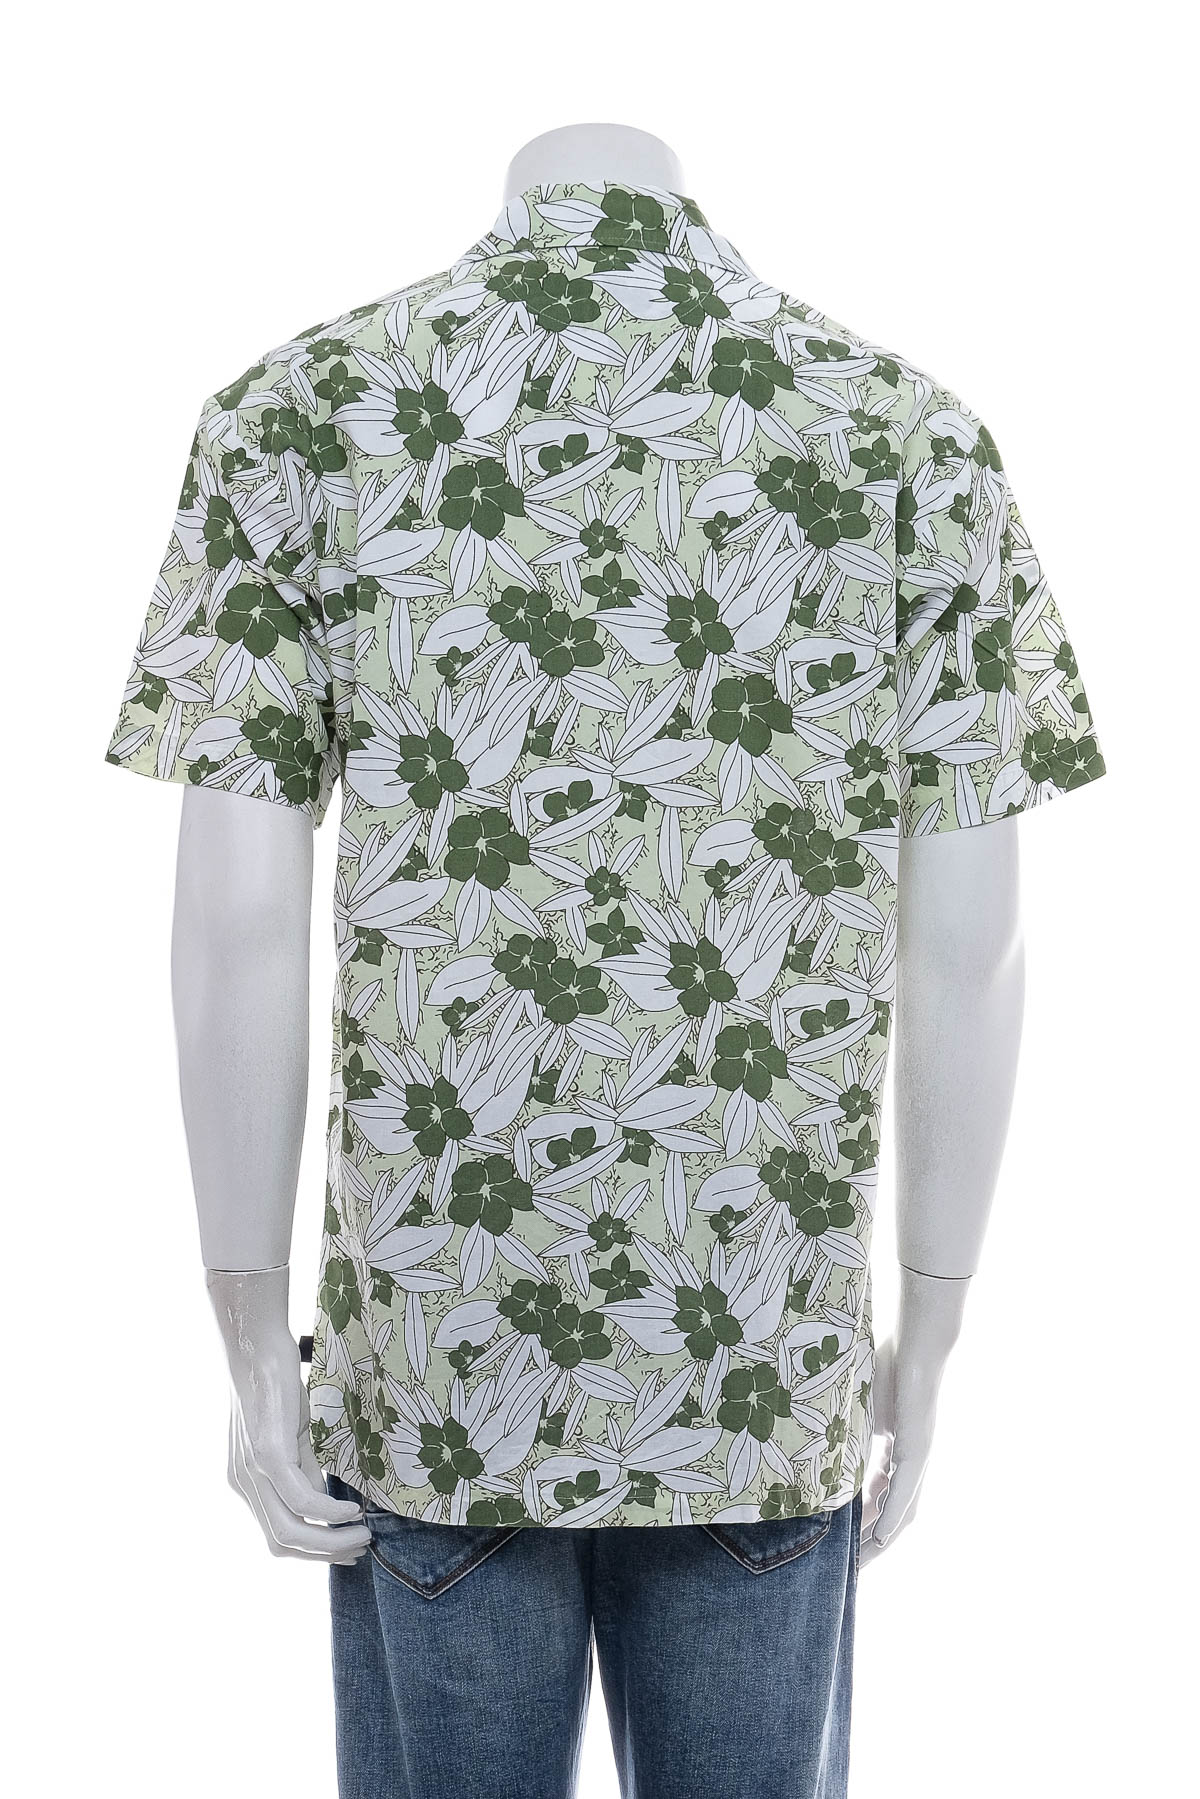 Ανδρικό πουκάμισο - LE FROG - 1